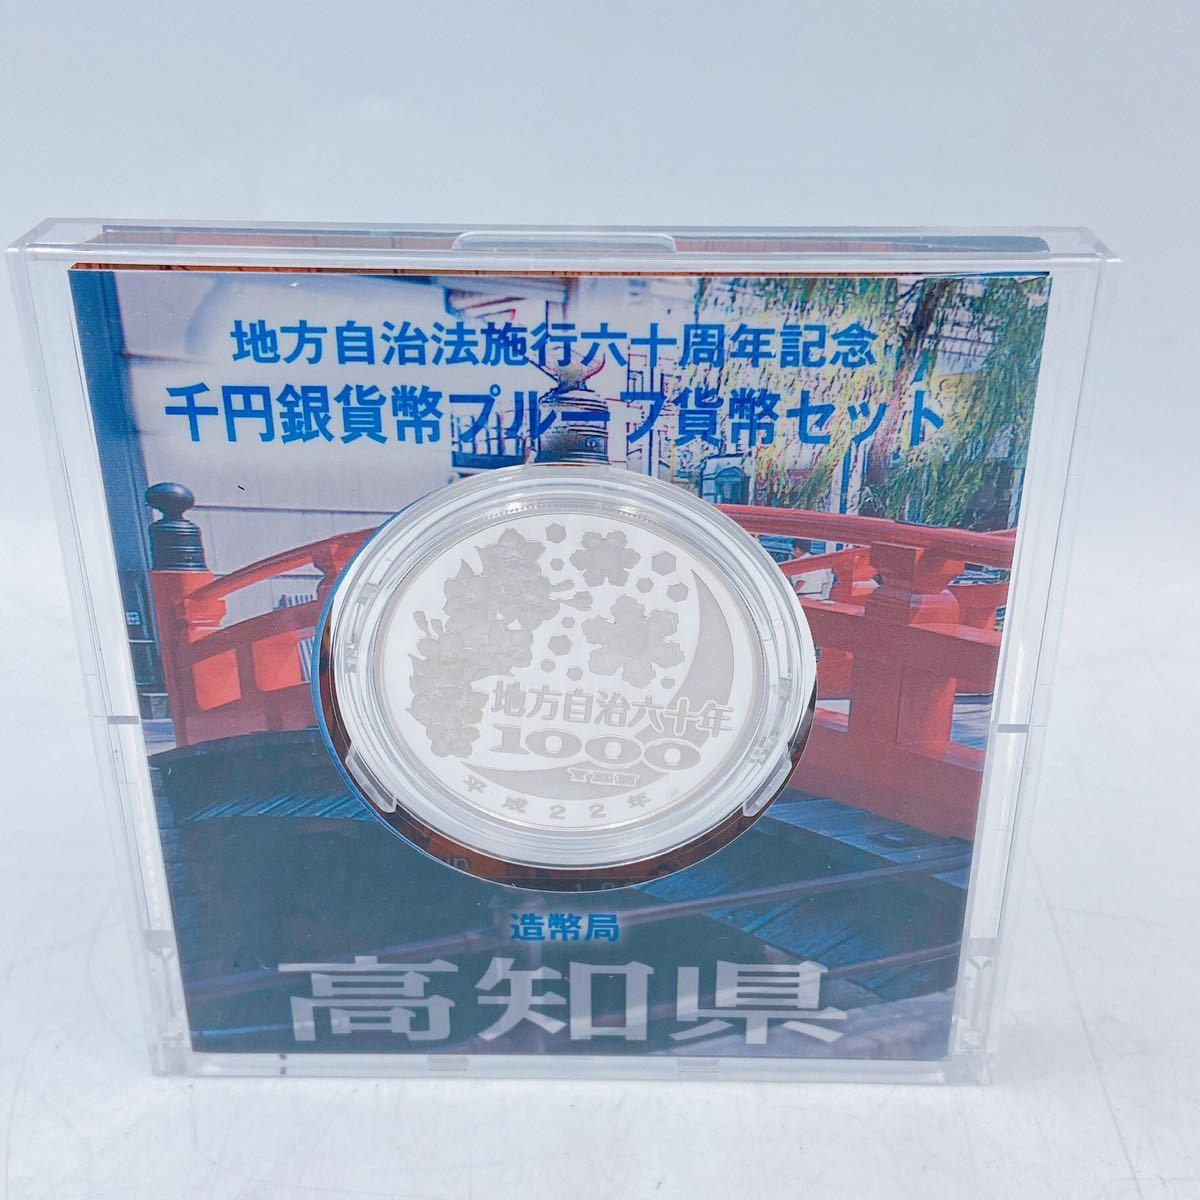 5A37 記念硬貨 切手 地方自治体法 施行 六十周年記念 千円銀貨幣